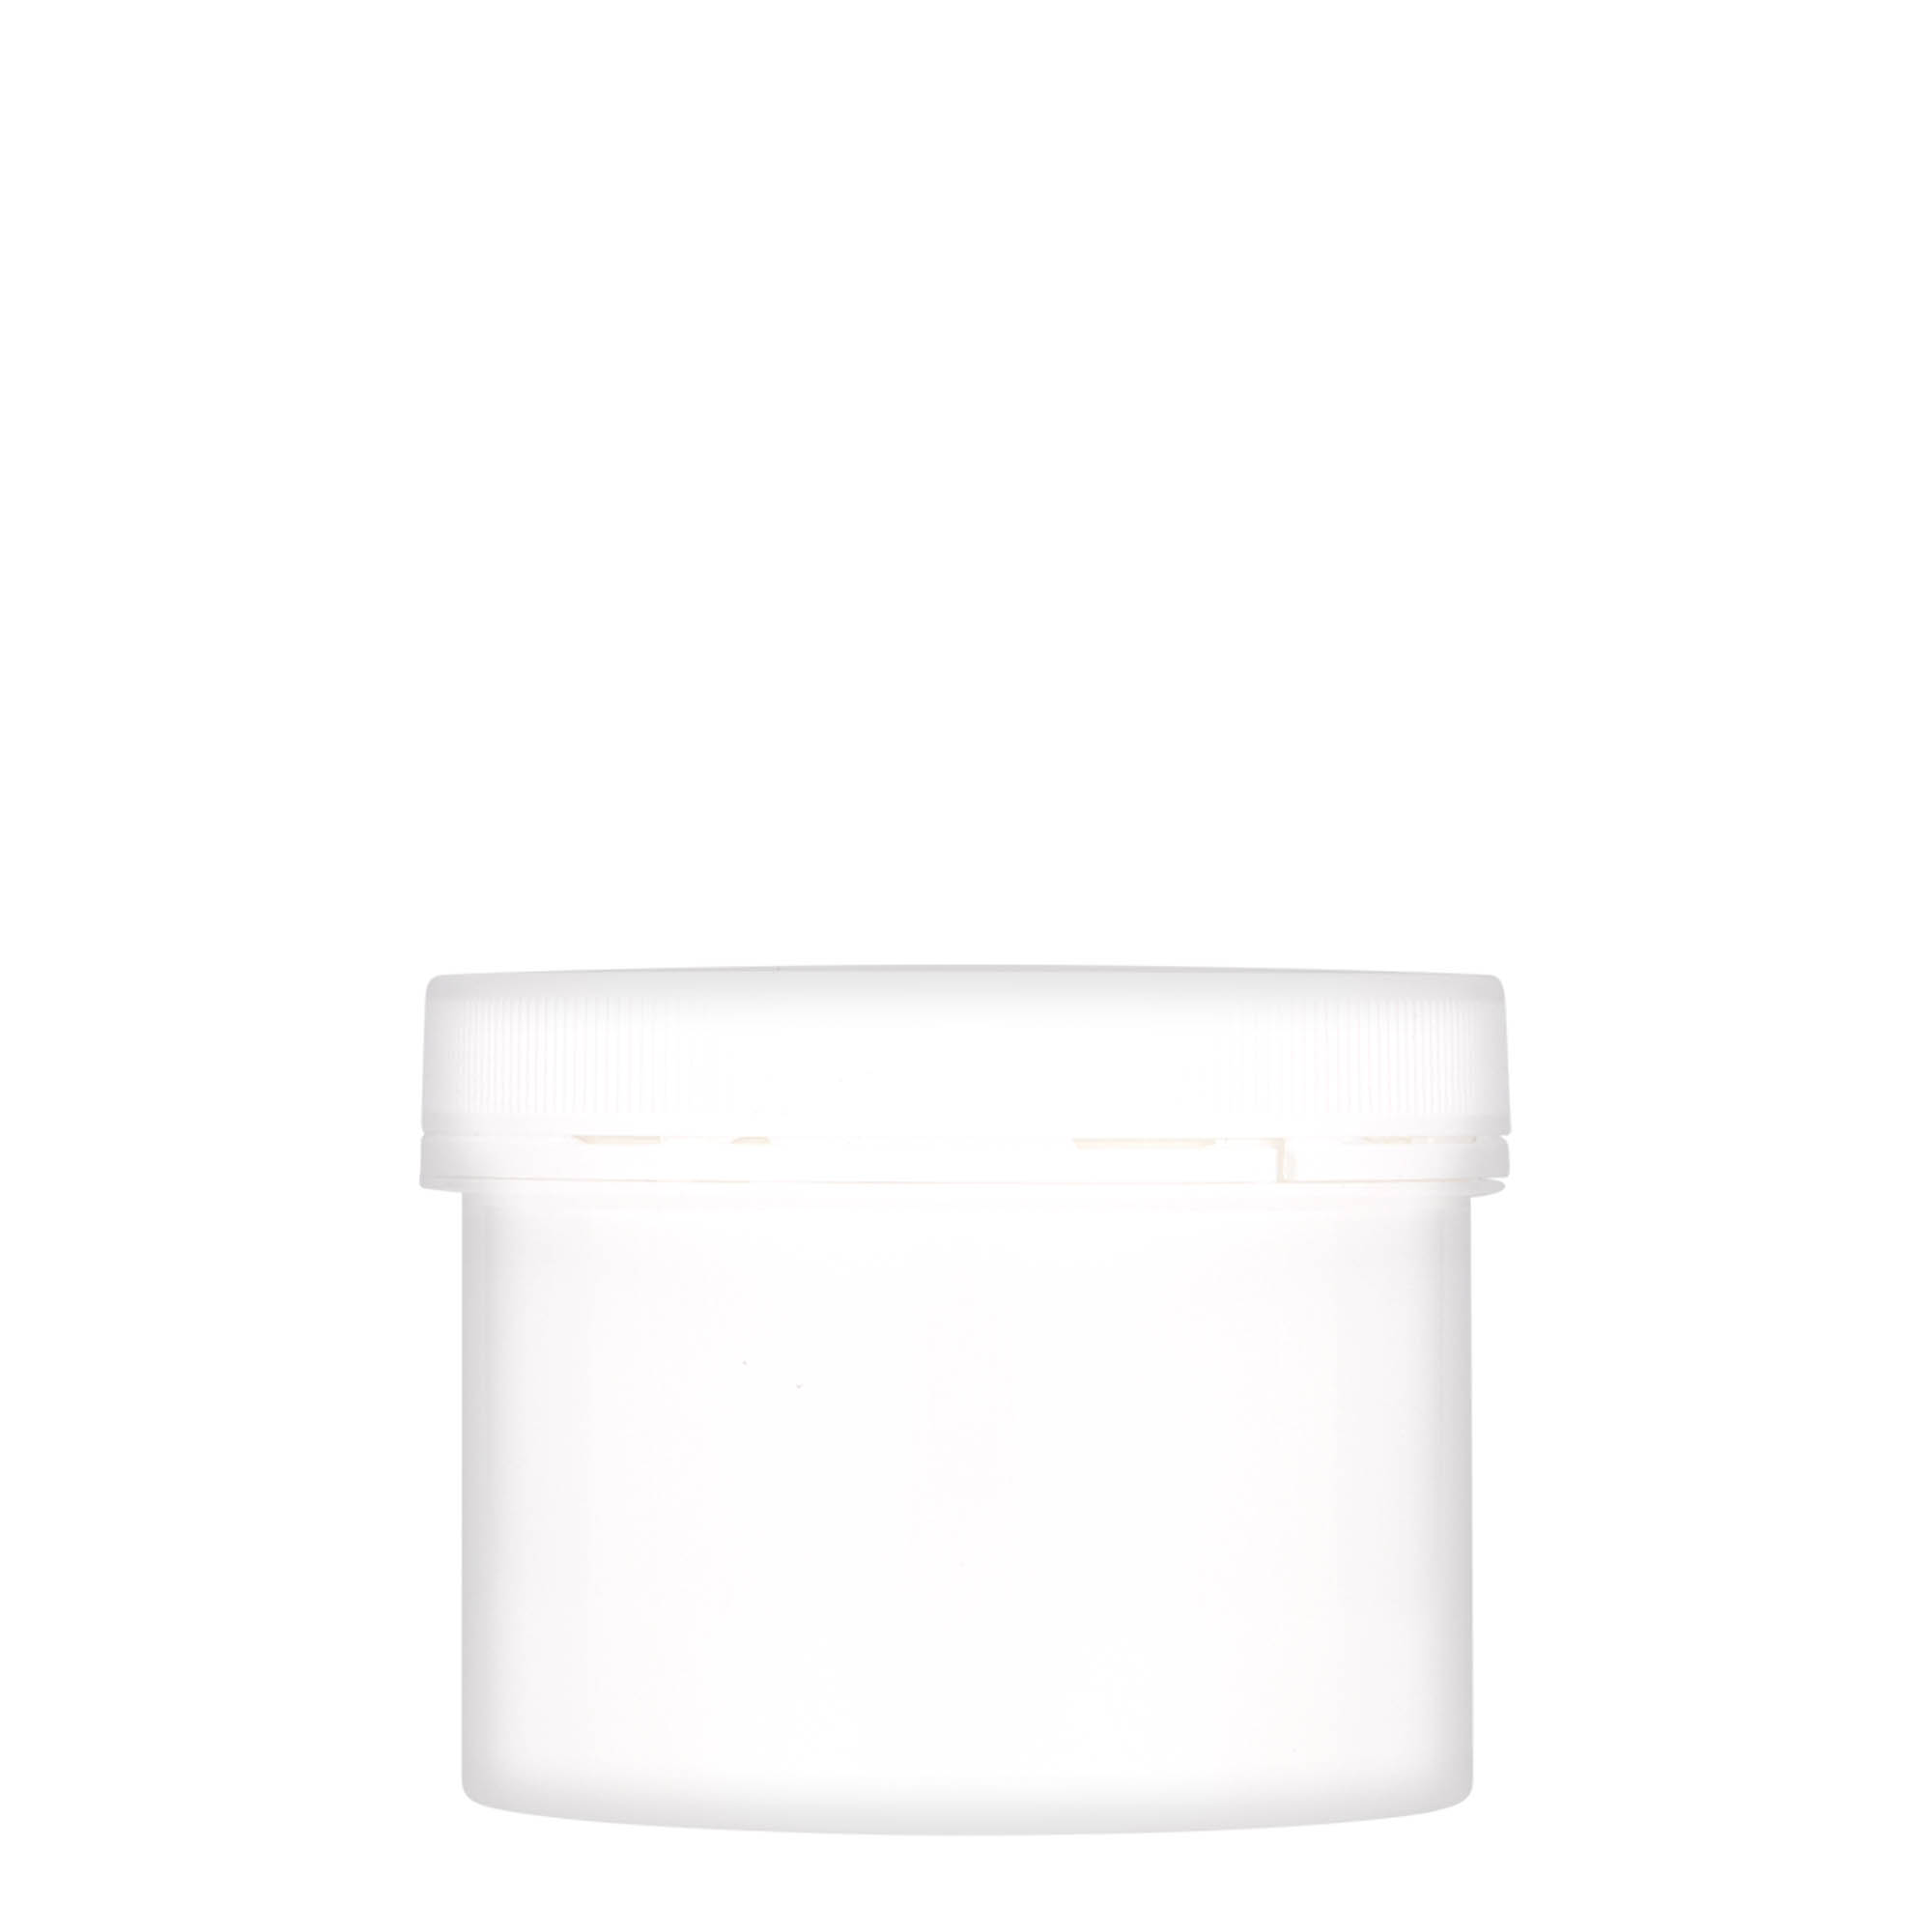 300 ml plastic jar 'Securilock', PP, white, closure: screw cap